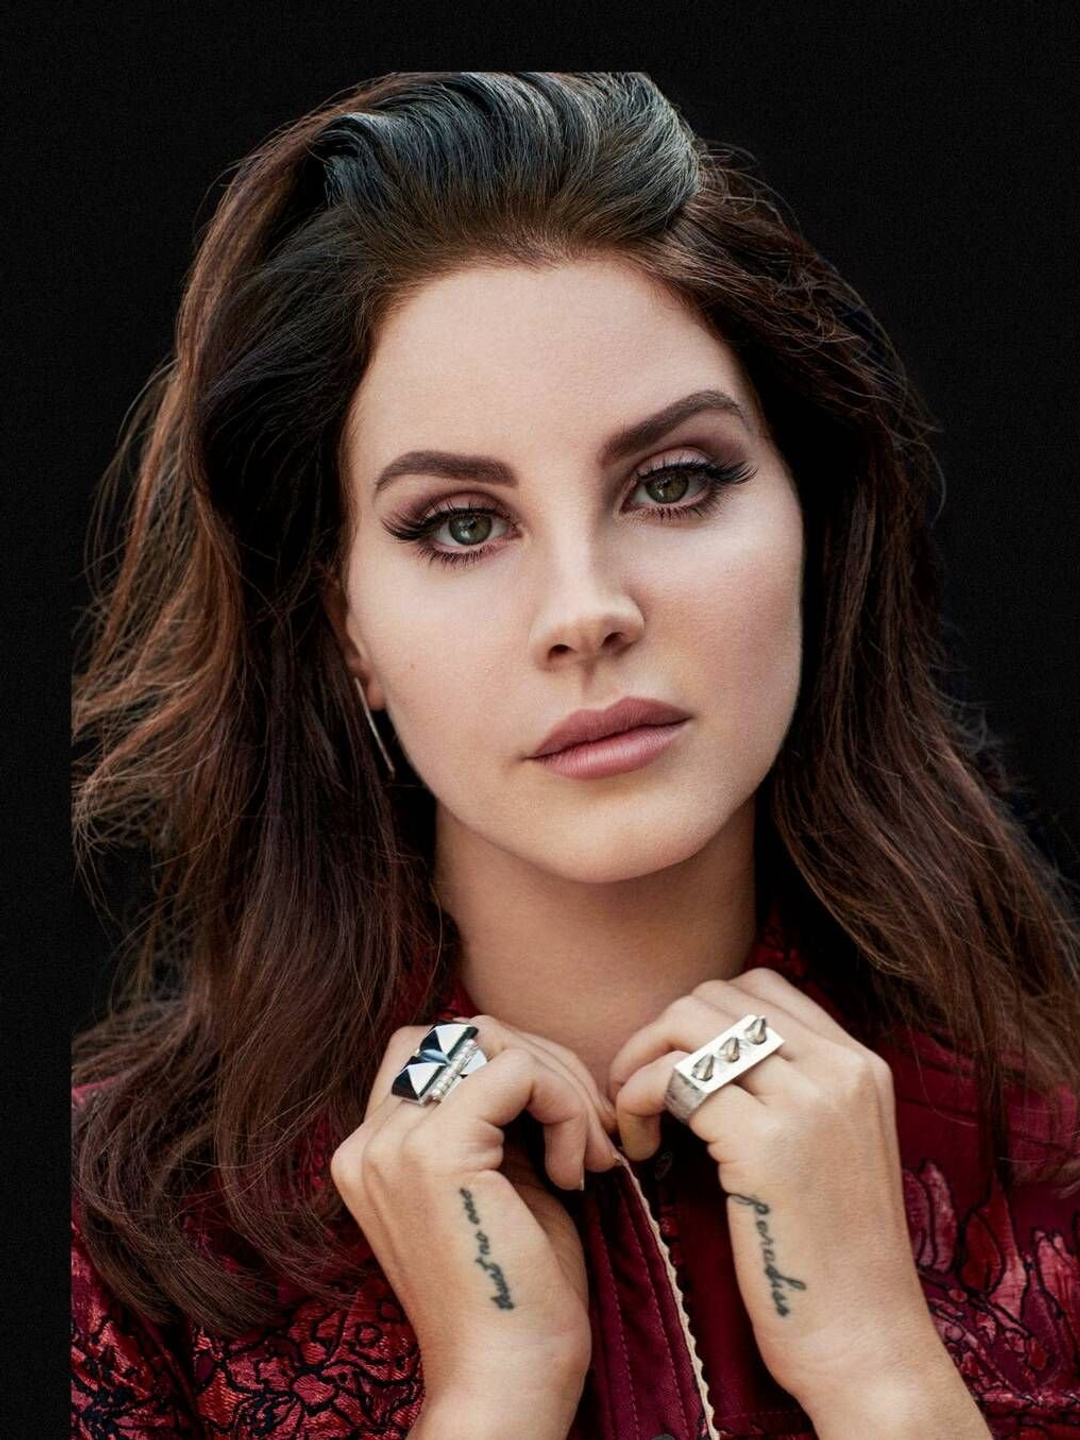 Lana Del Rey appearance